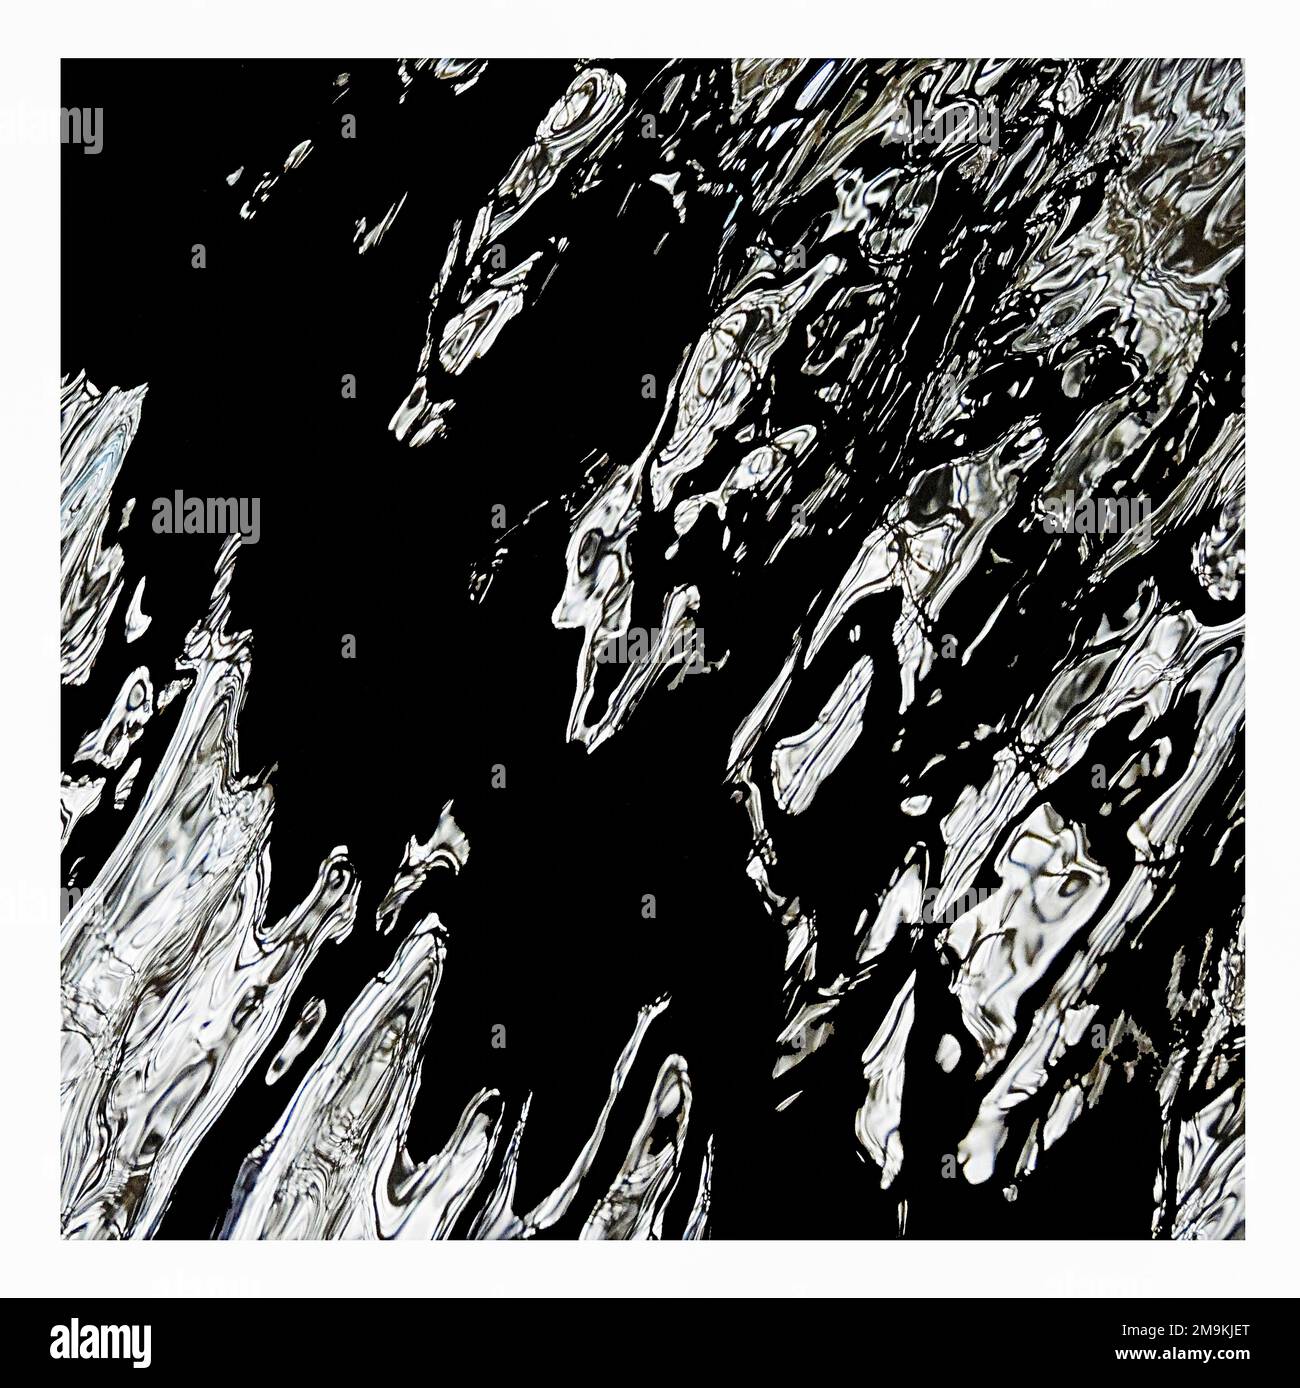 Fotografia astratta di increspature in bianco e nero e riflessi in acqua Foto Stock